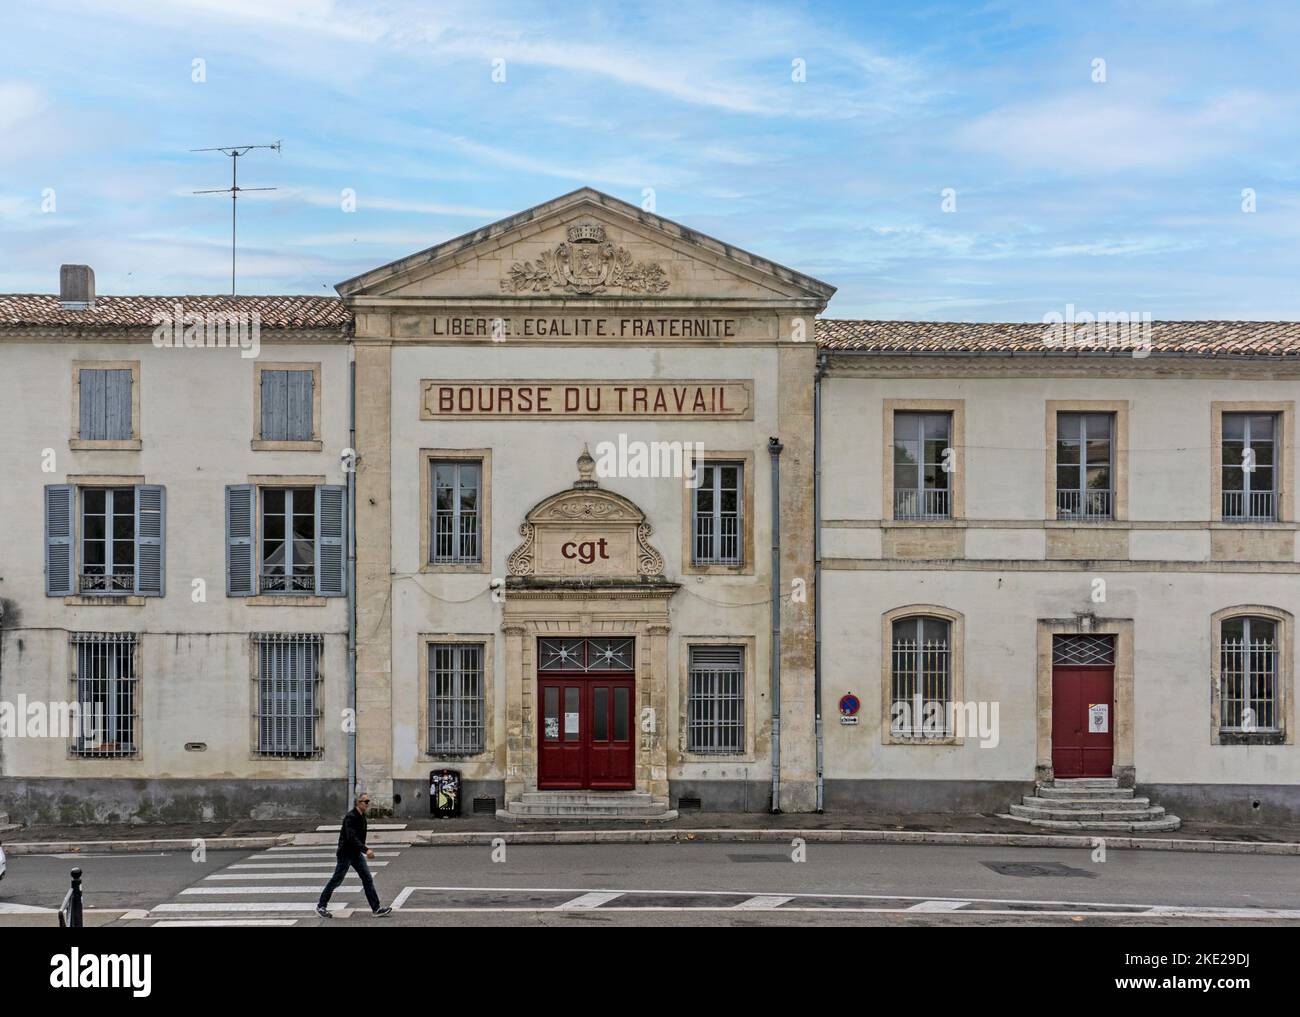 La Bourse du travail à Arles, France. Bourse du travail, bâtiment historique, Arles. Banque D'Images